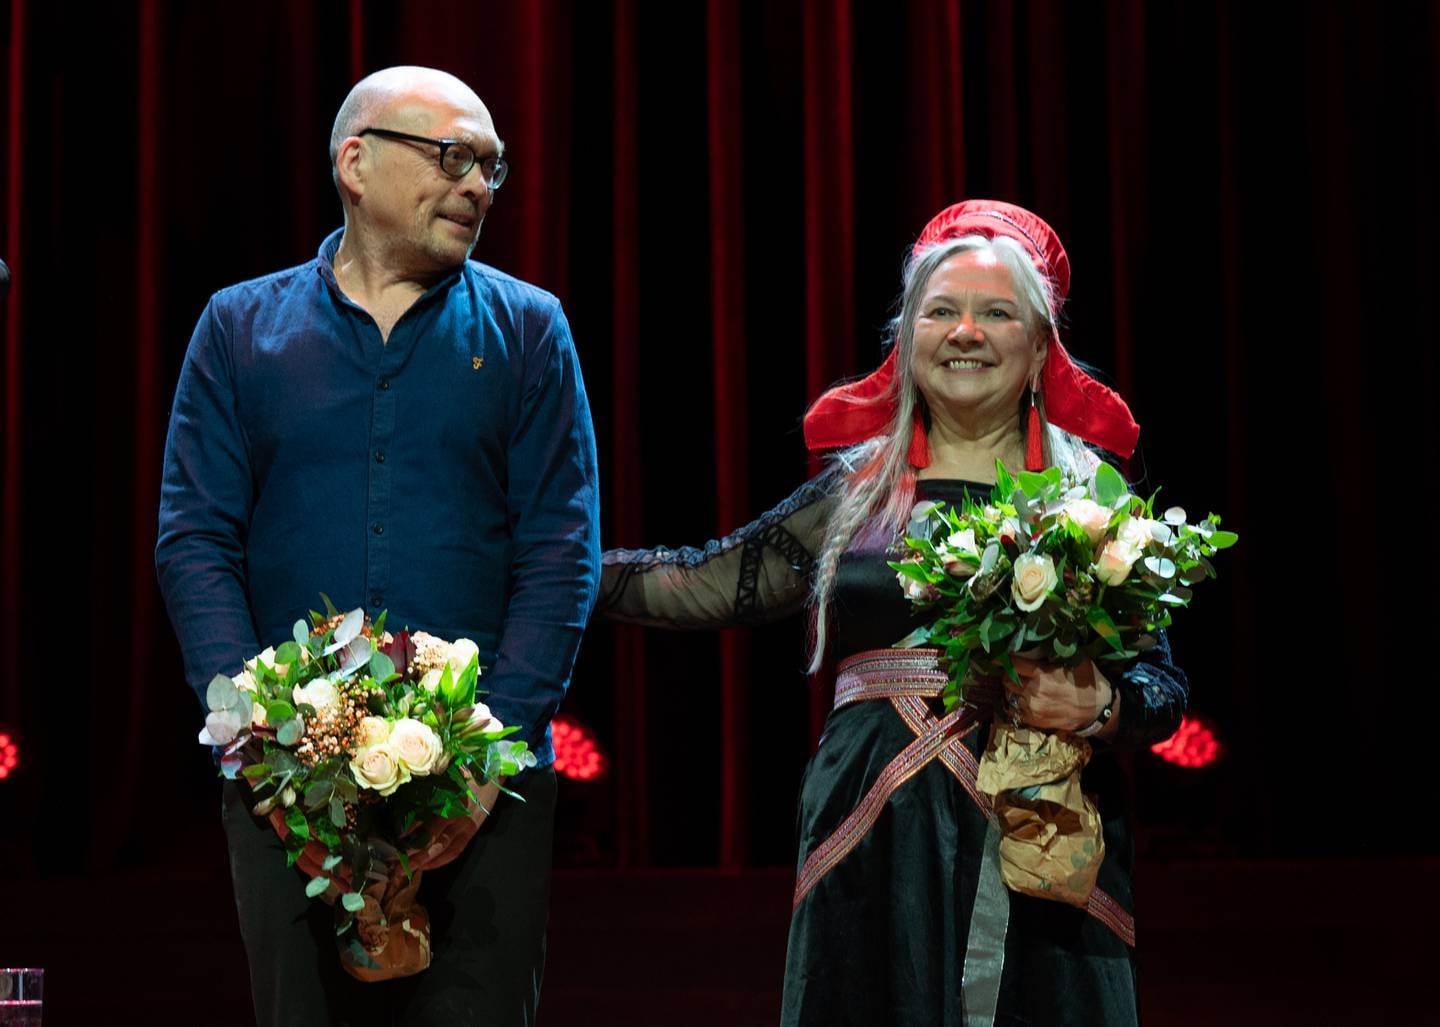 Fortjente blomster til Bugge Wesseltoft og Mari Boine etter åpningskonserten på Oslo World.